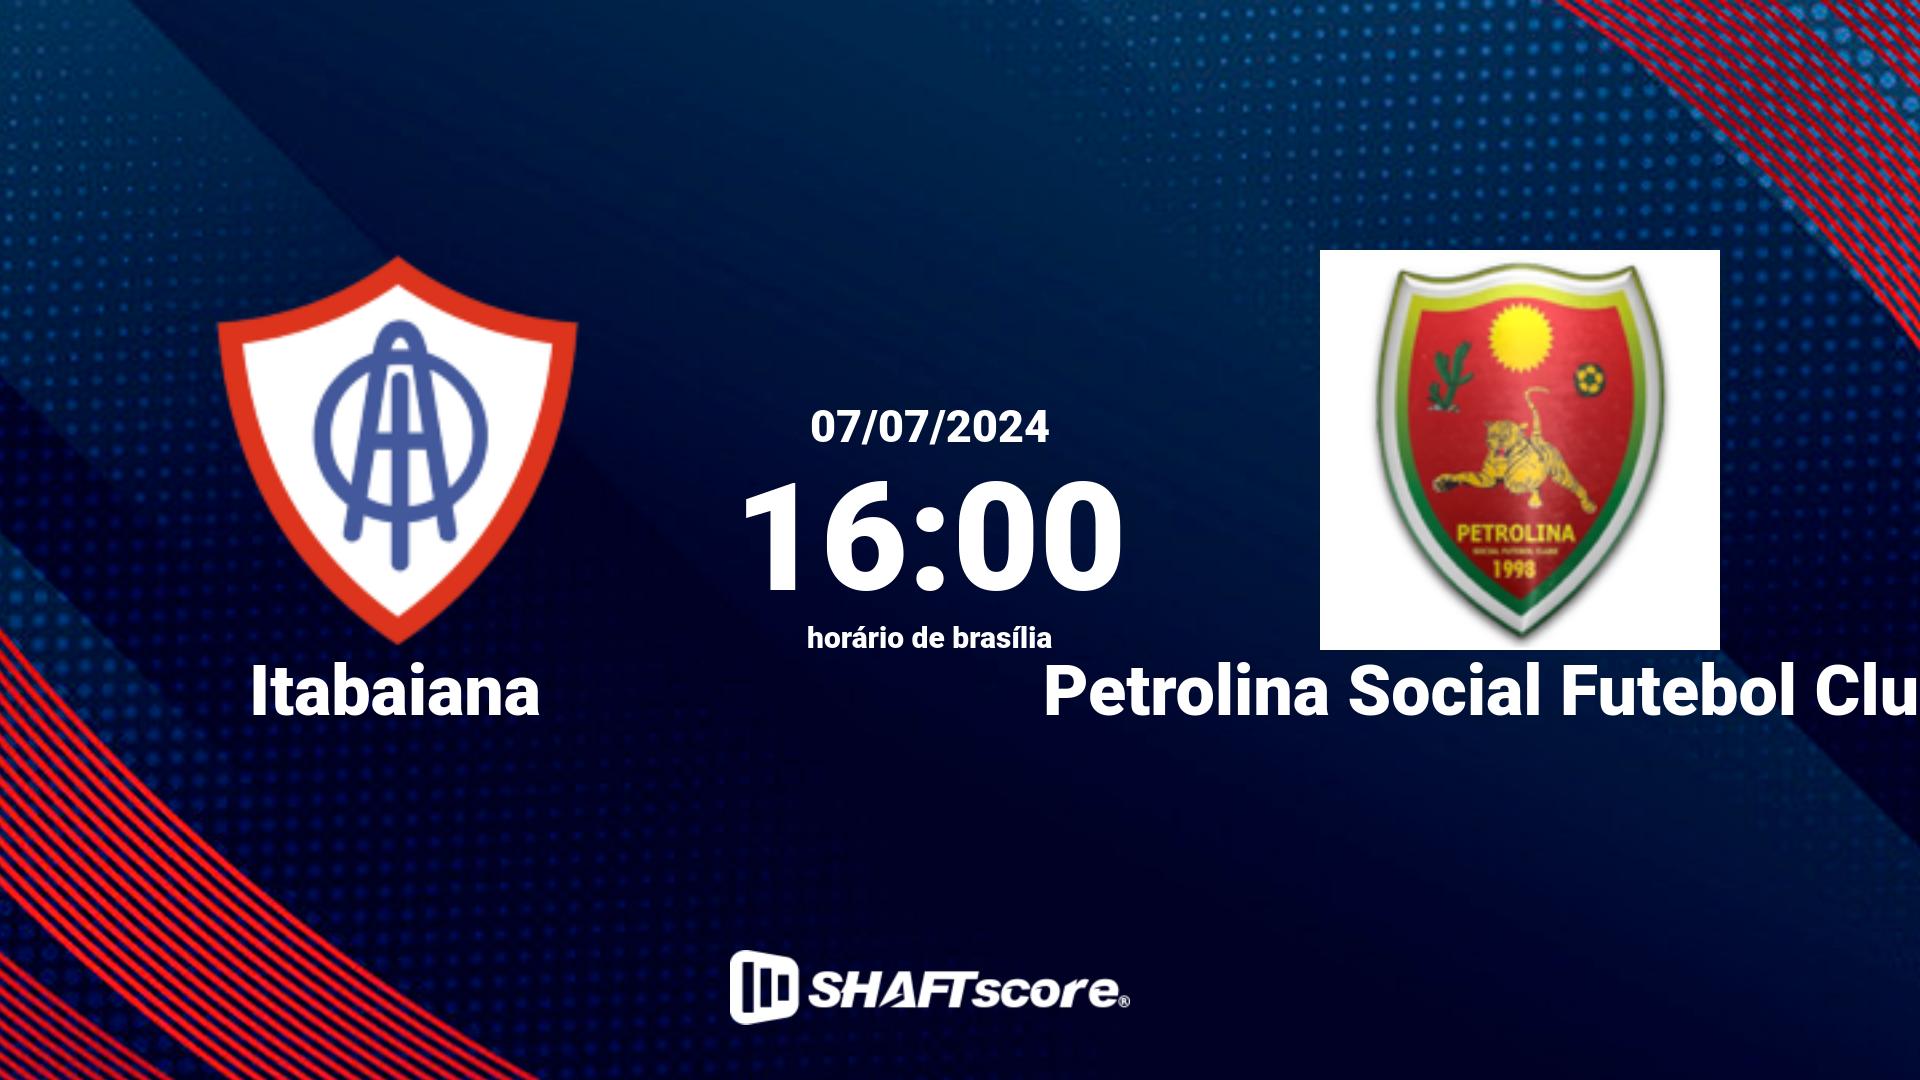 Estatísticas do jogo Itabaiana vs Petrolina Social Futebol Clube 07.07 16:00